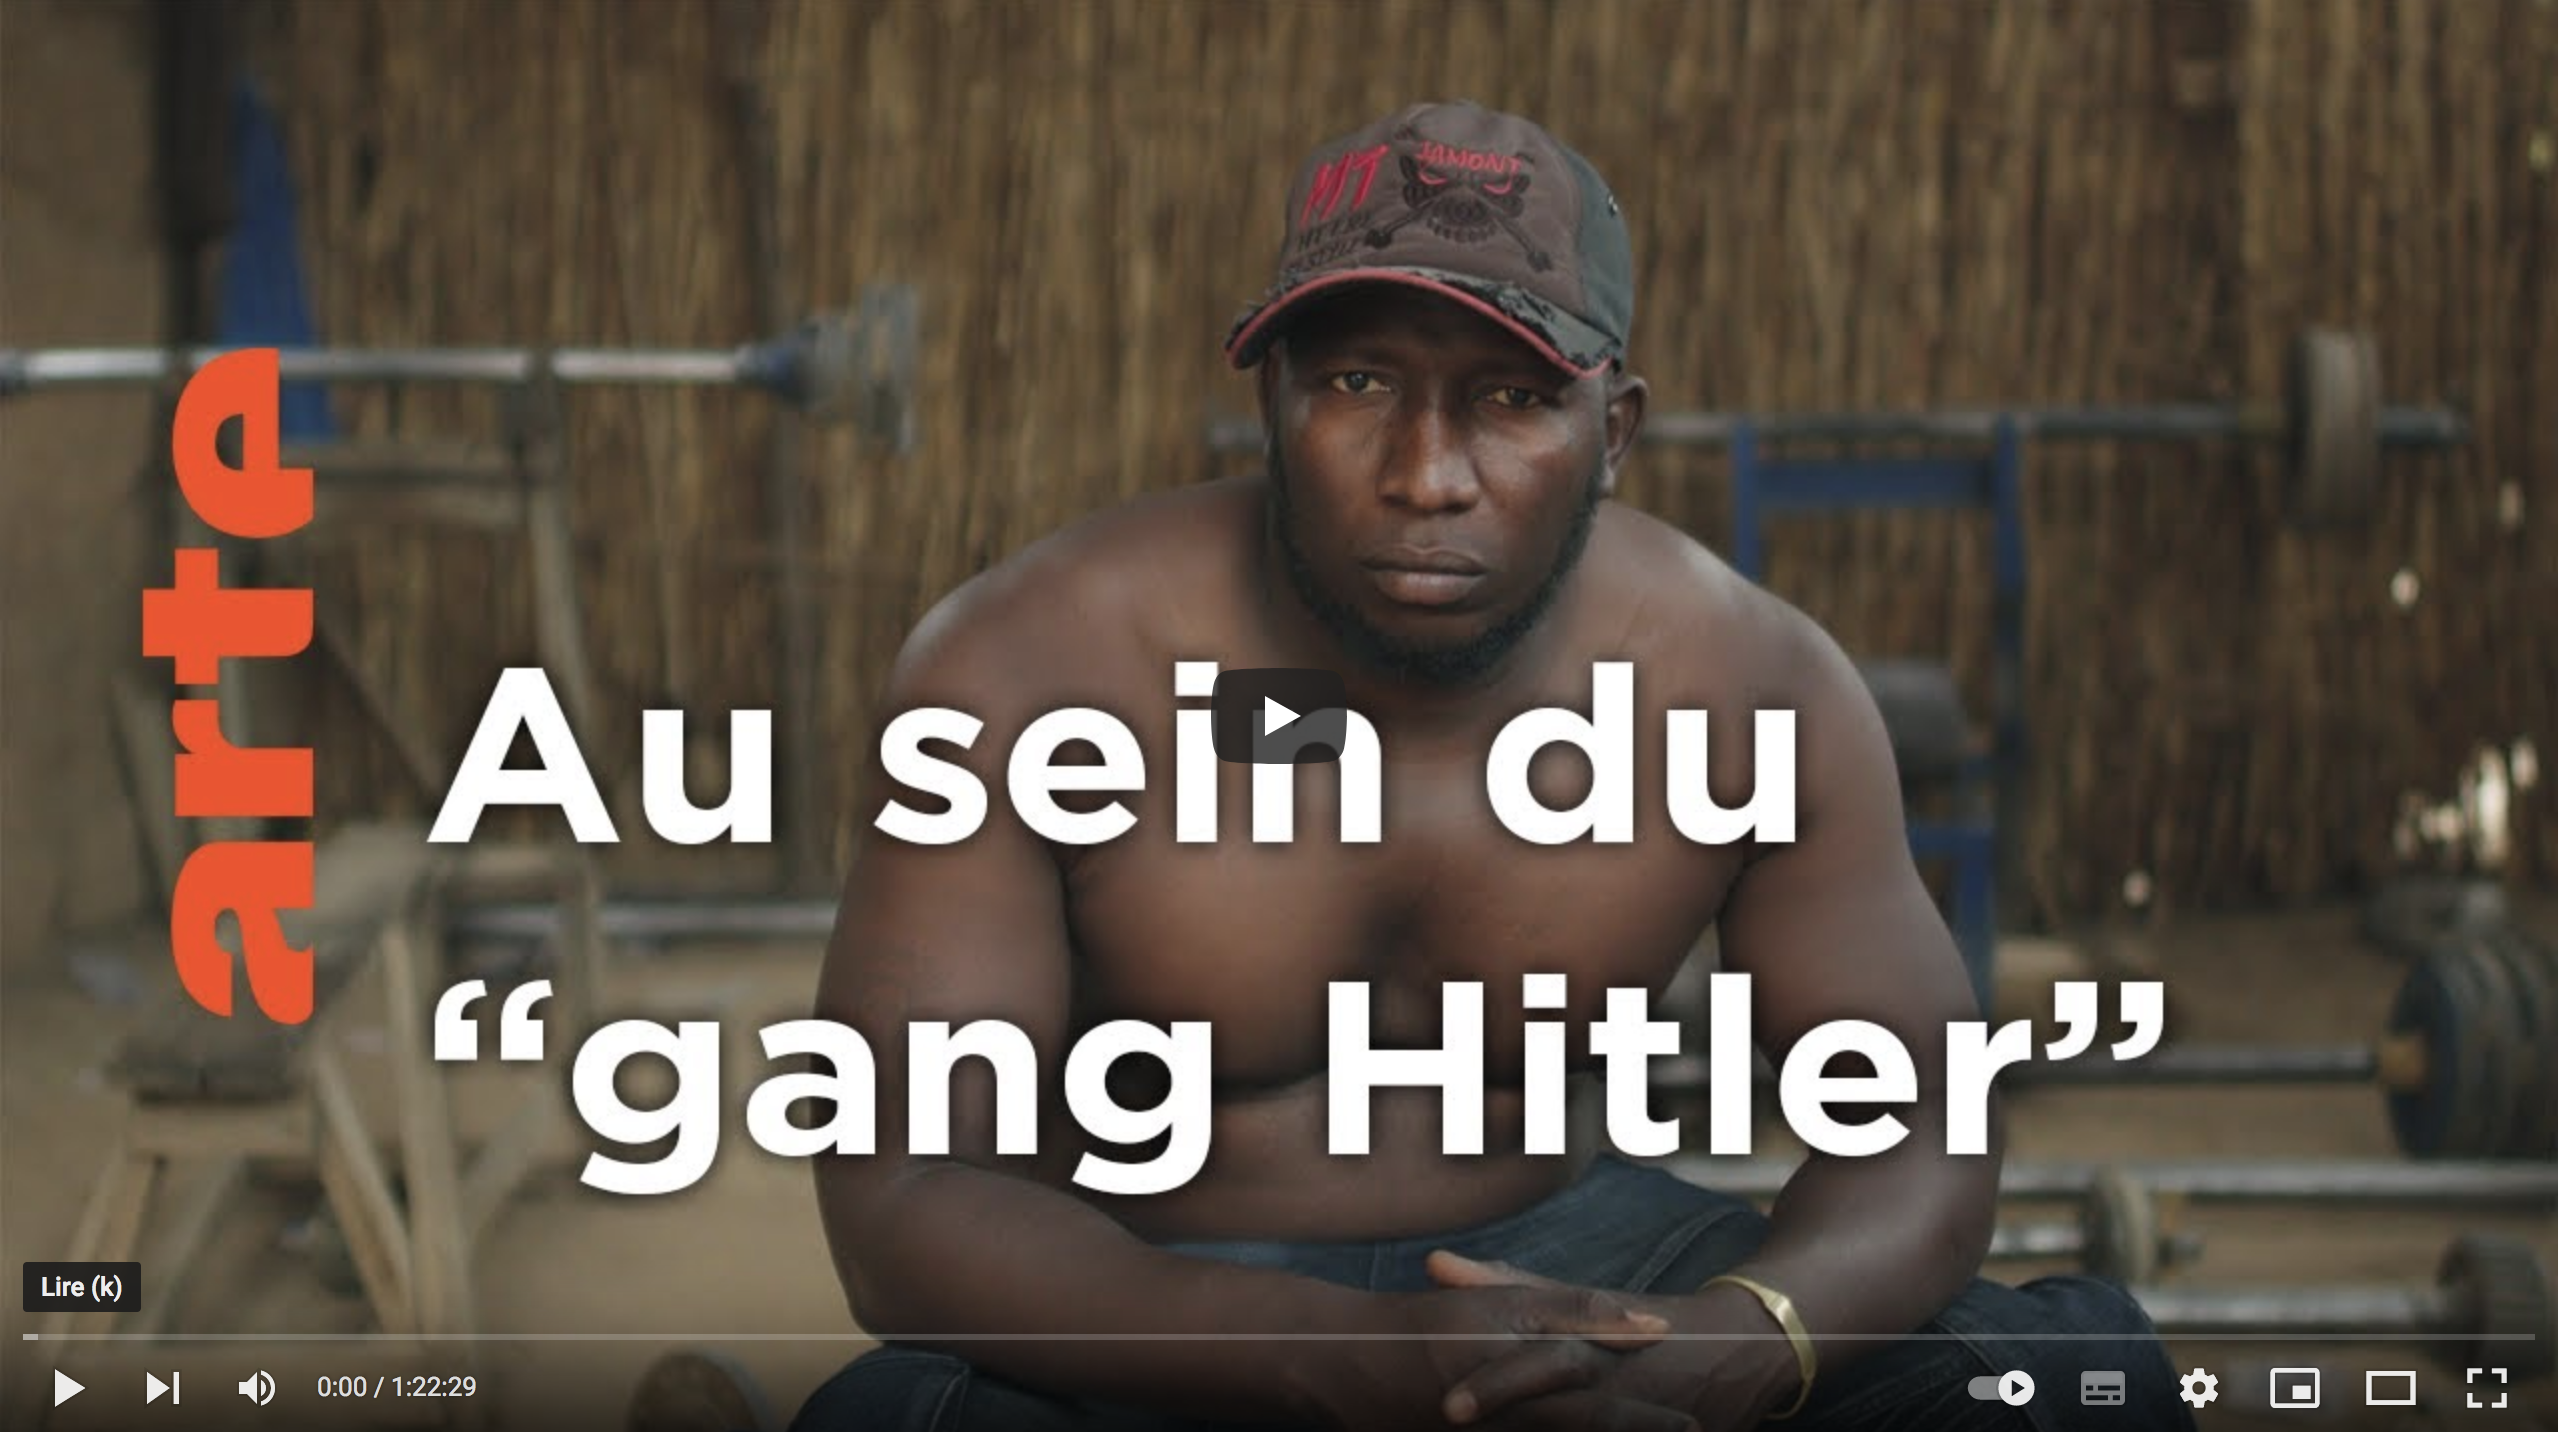 Sahel nigérien : Reportage au sein du “gang Hitler” (VIDÉO)